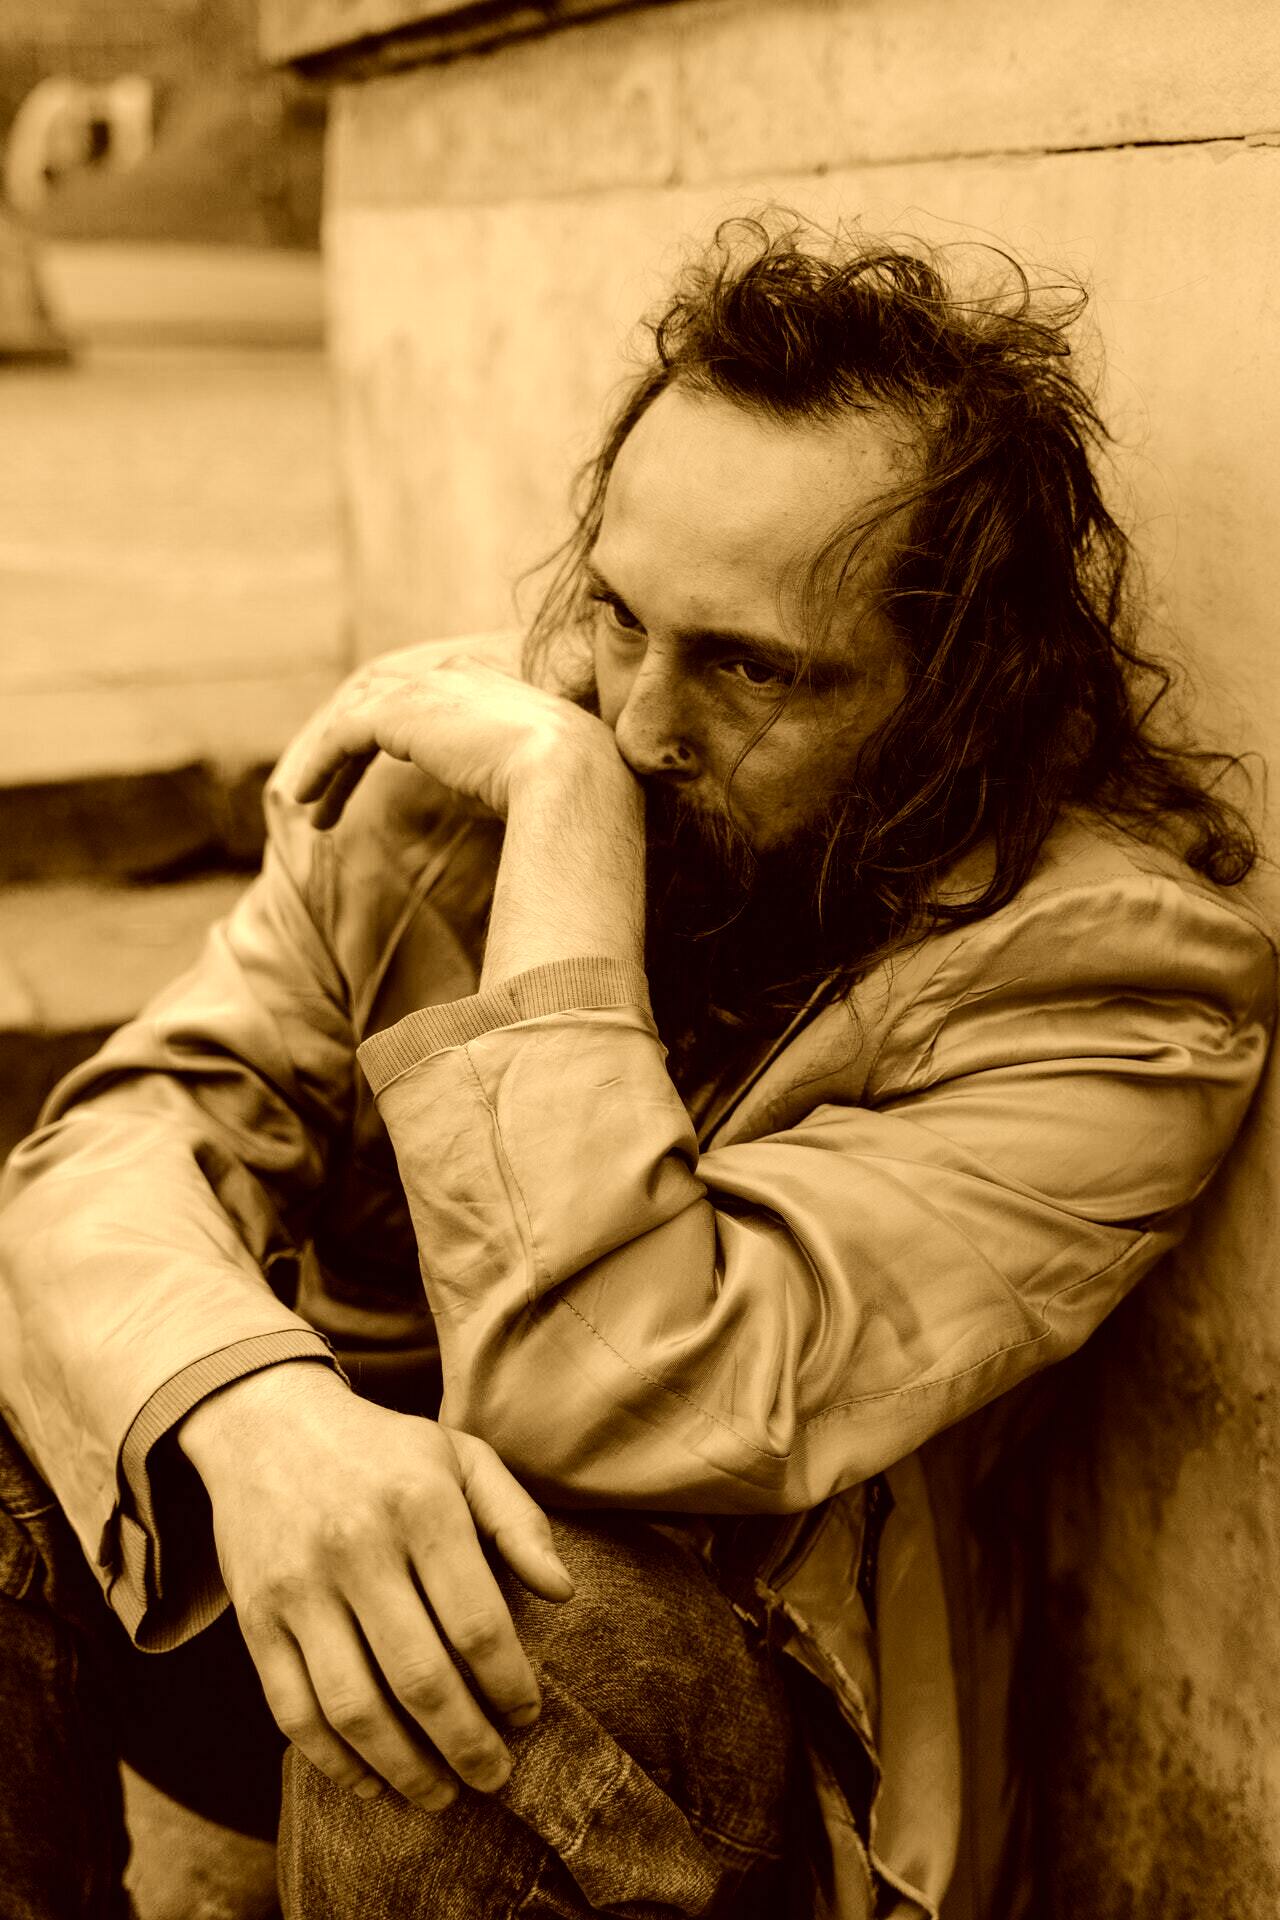 John konnte keinen Job finden, nachdem er rausgeworfen wurde, und wurde obdachlos. | Quelle: Pexels